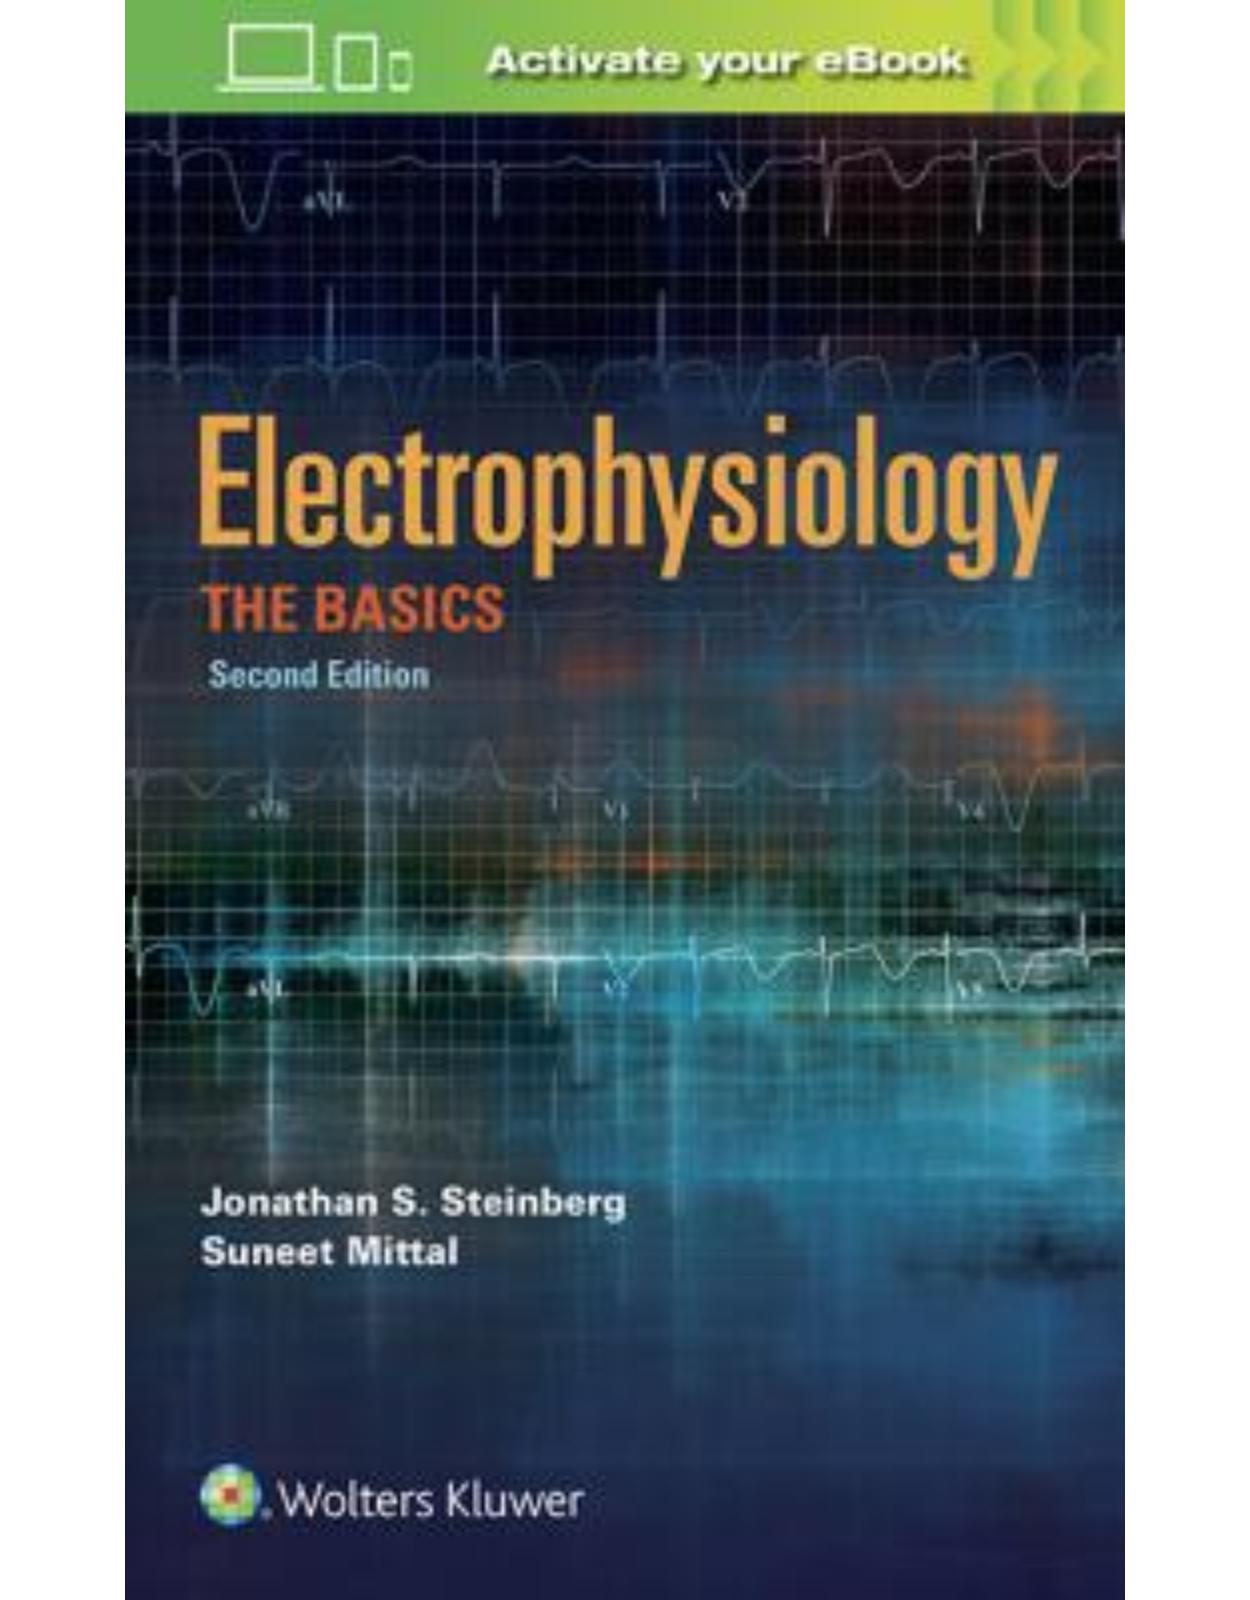  Electrophysiology: The Basics, 2e THE BASICS